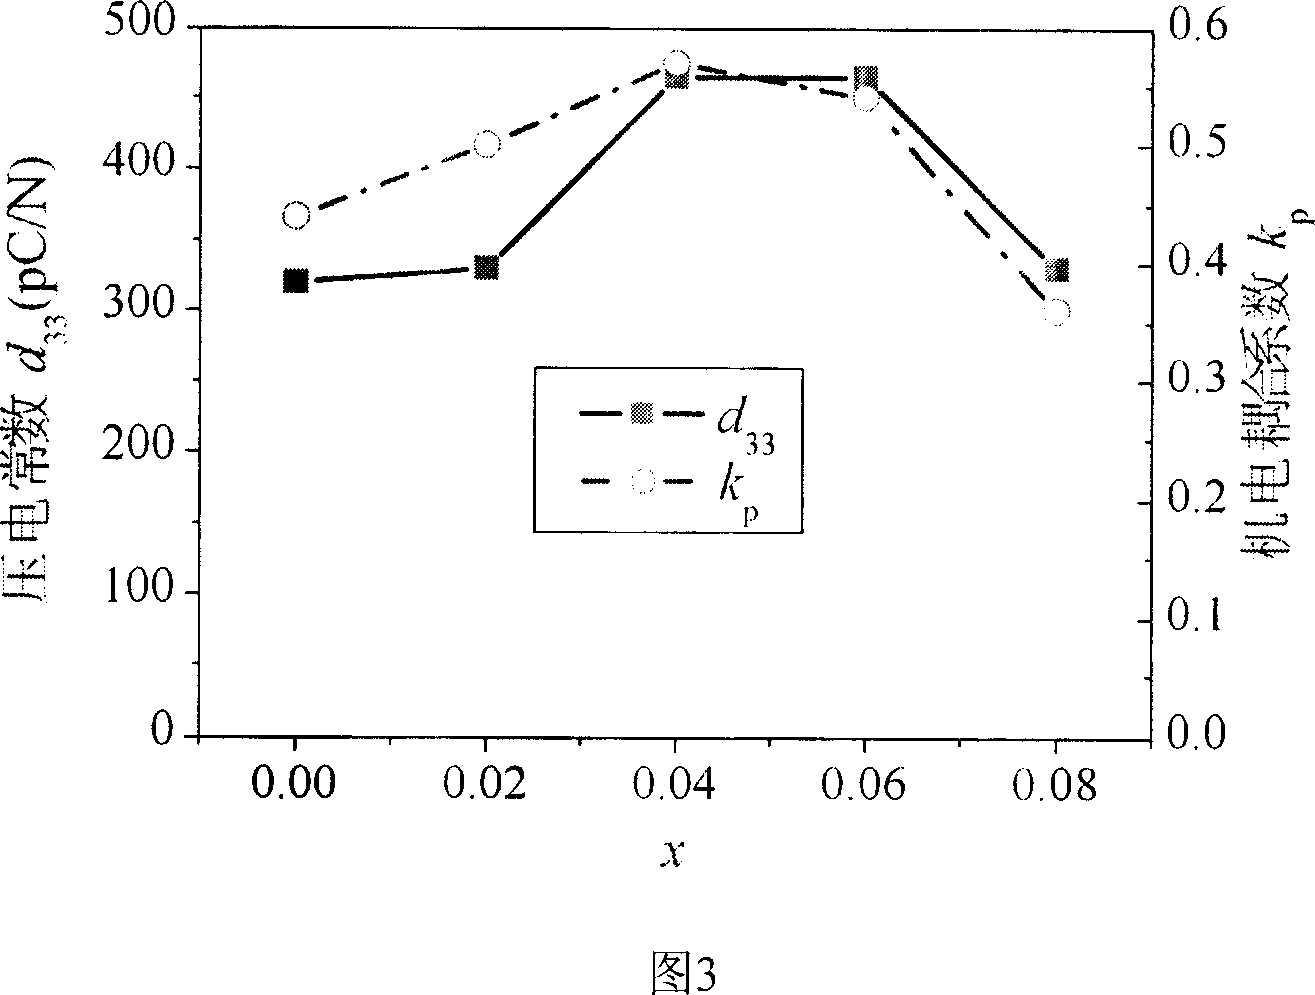 Lead-bismuth-lithium-titanium-scandium-niobium series piezoelectric ceramic with high Curie temperature and high piezoelectricity property